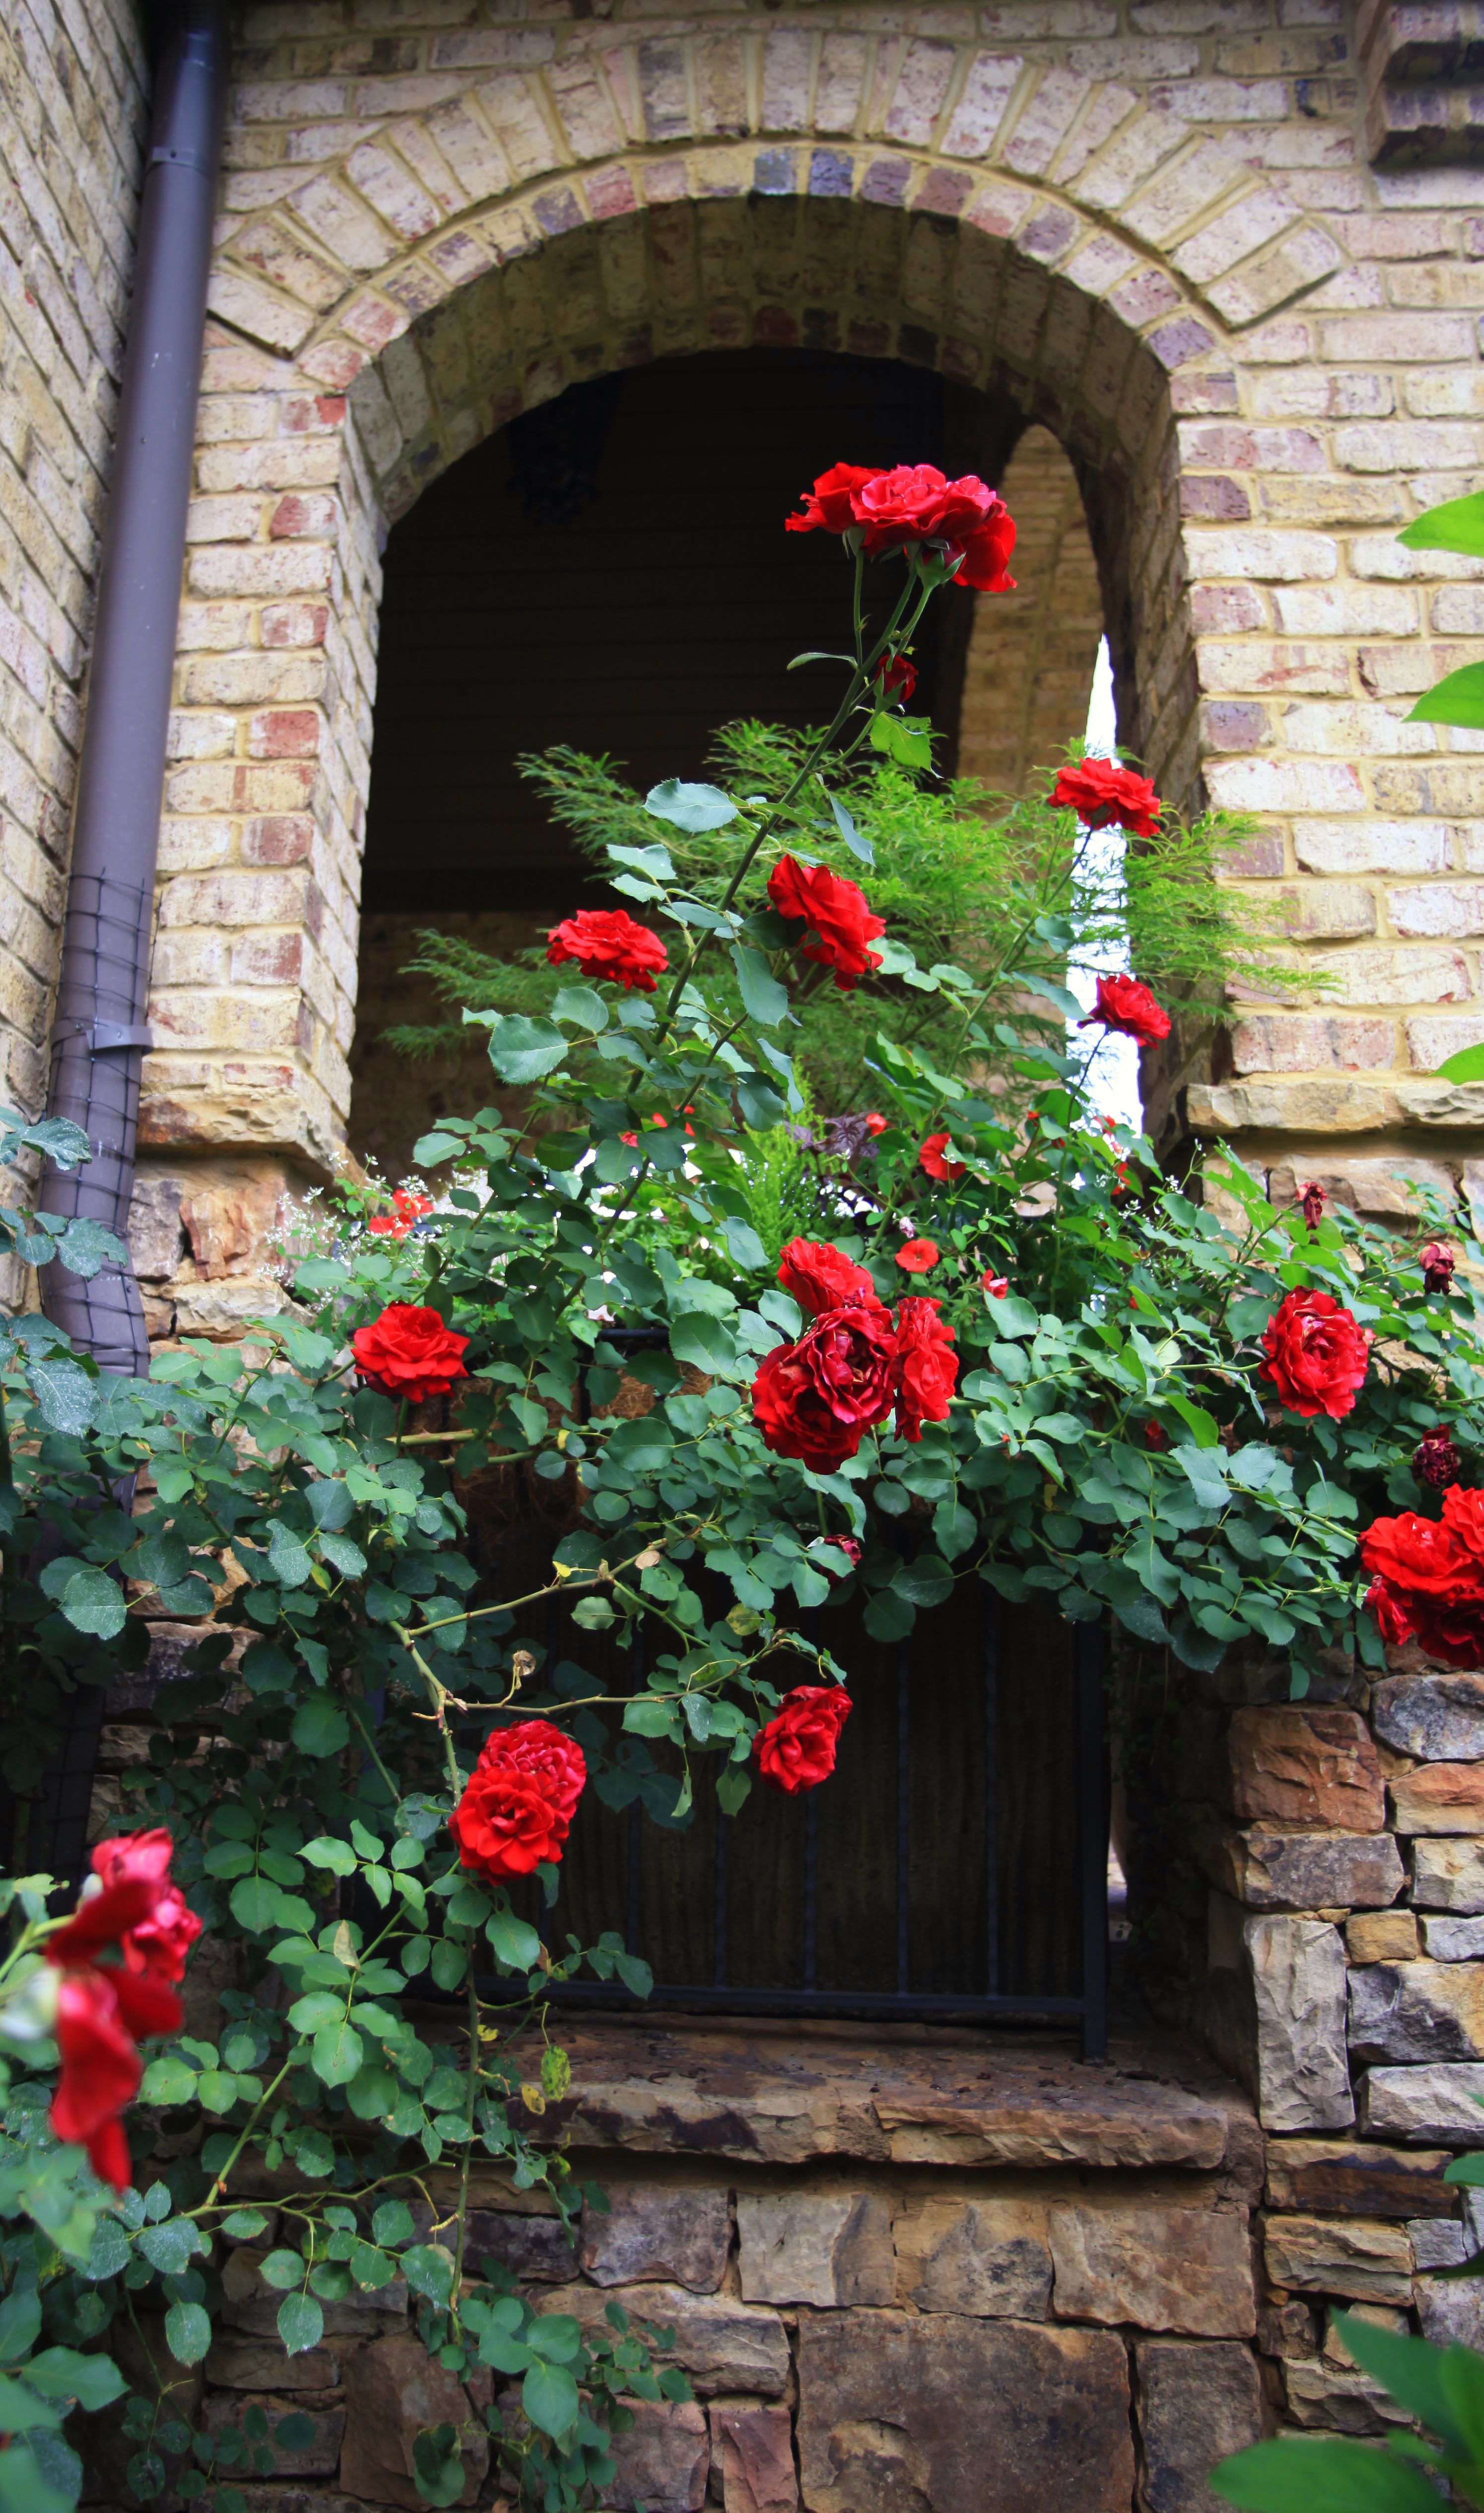 Плетистые розы Дон Жуан